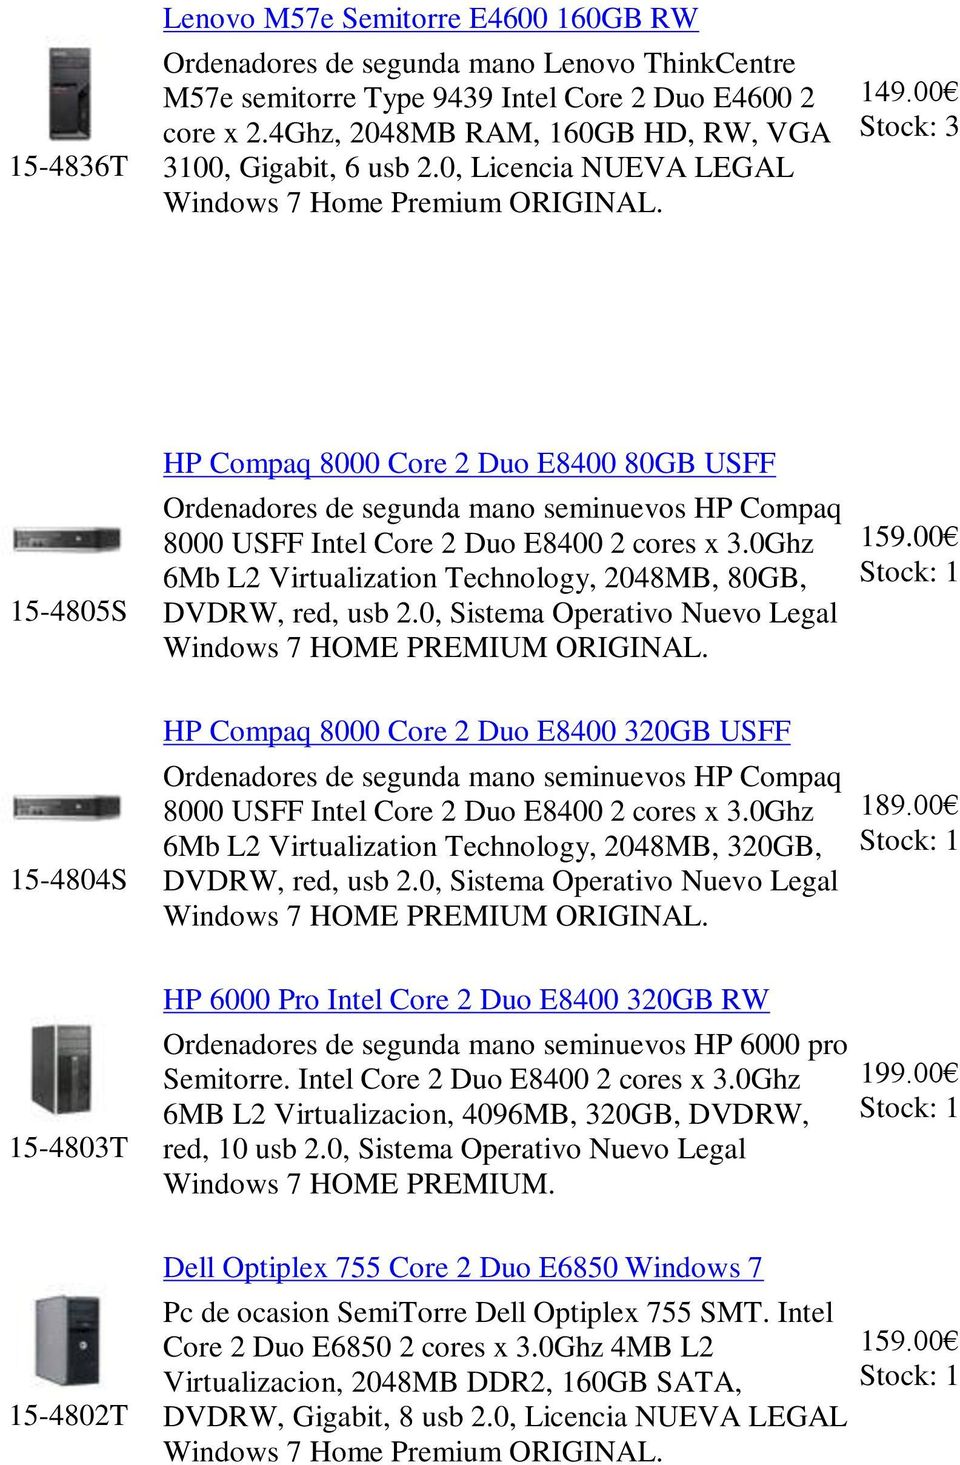 00 3 15-4805S HP Compaq 8000 Core 2 Duo E8400 80GB USFF Ordenadores de segunda mano seminuevos HP Compaq 8000 USFF Intel Core 2 Duo E8400 2 cores x 3.